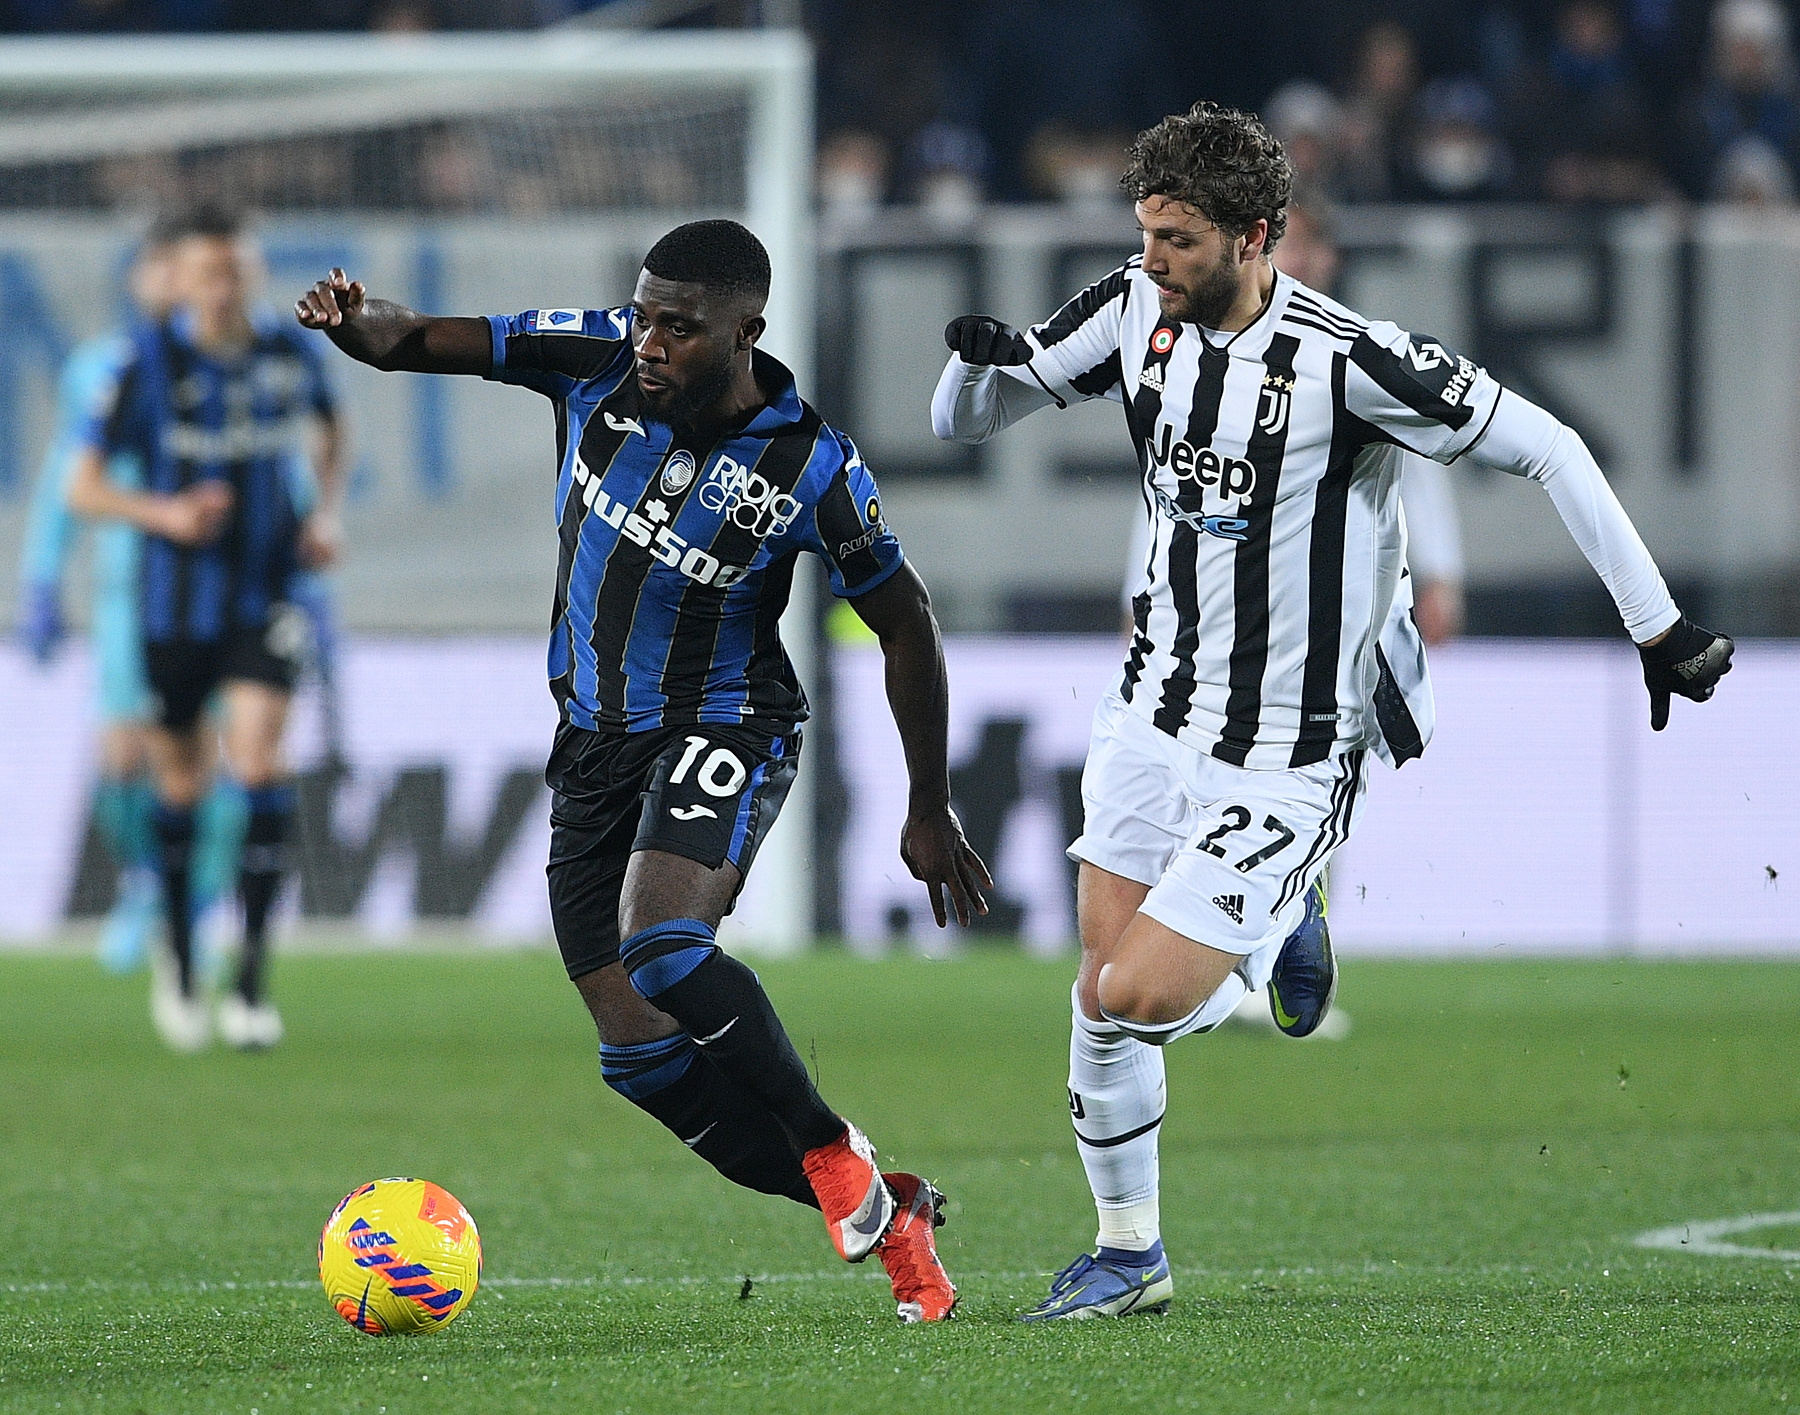 Serie A: Juventus Turyn – Atalanta Bergamo zapowiedź, typy i kursy bukmacherskie